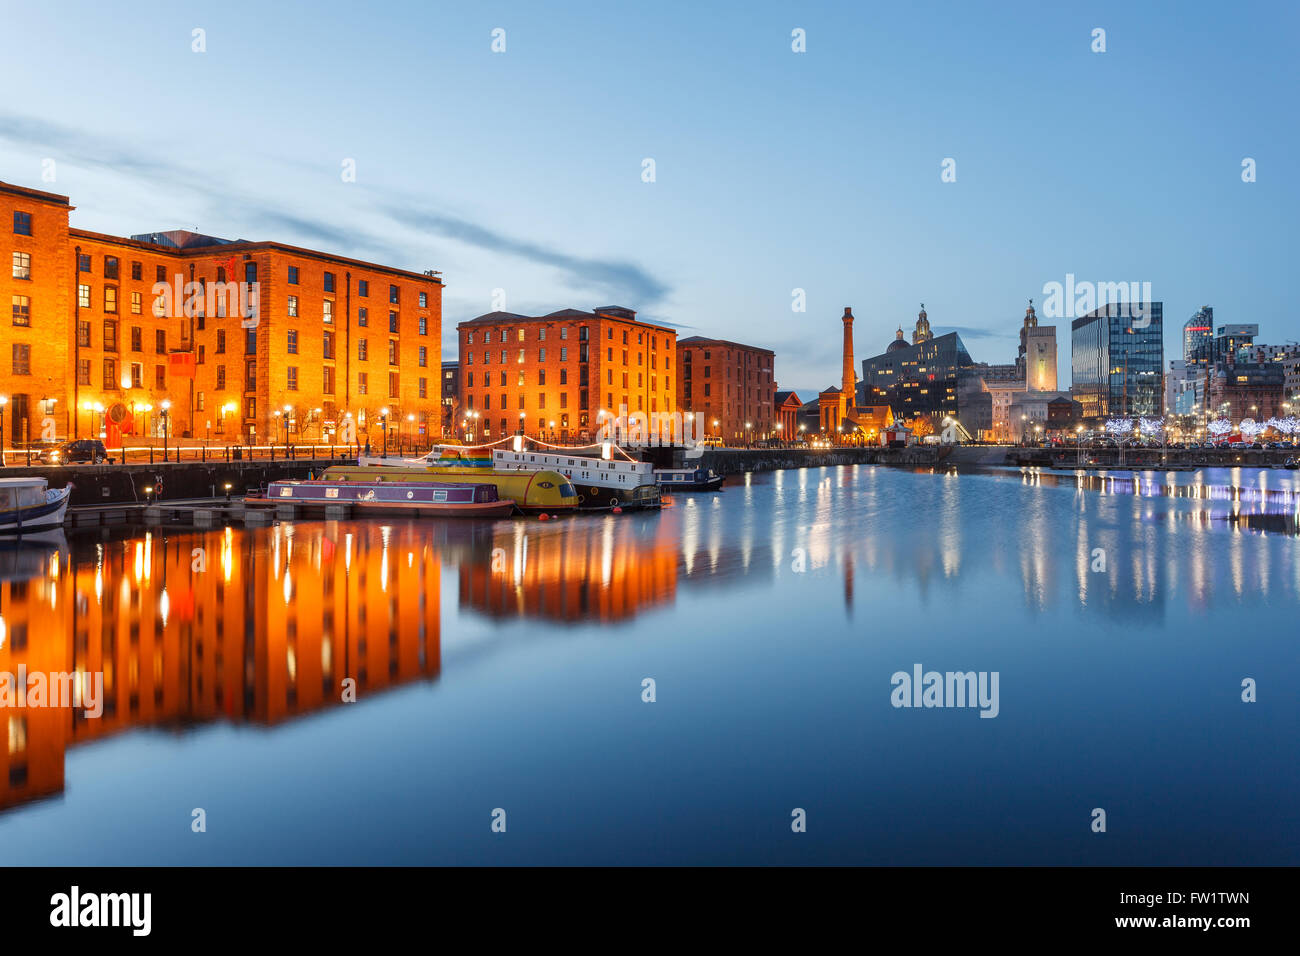 Reflexionen von alten Gebäuden am Albert Dock, Liverpool Waterfront, UK. Stockfoto